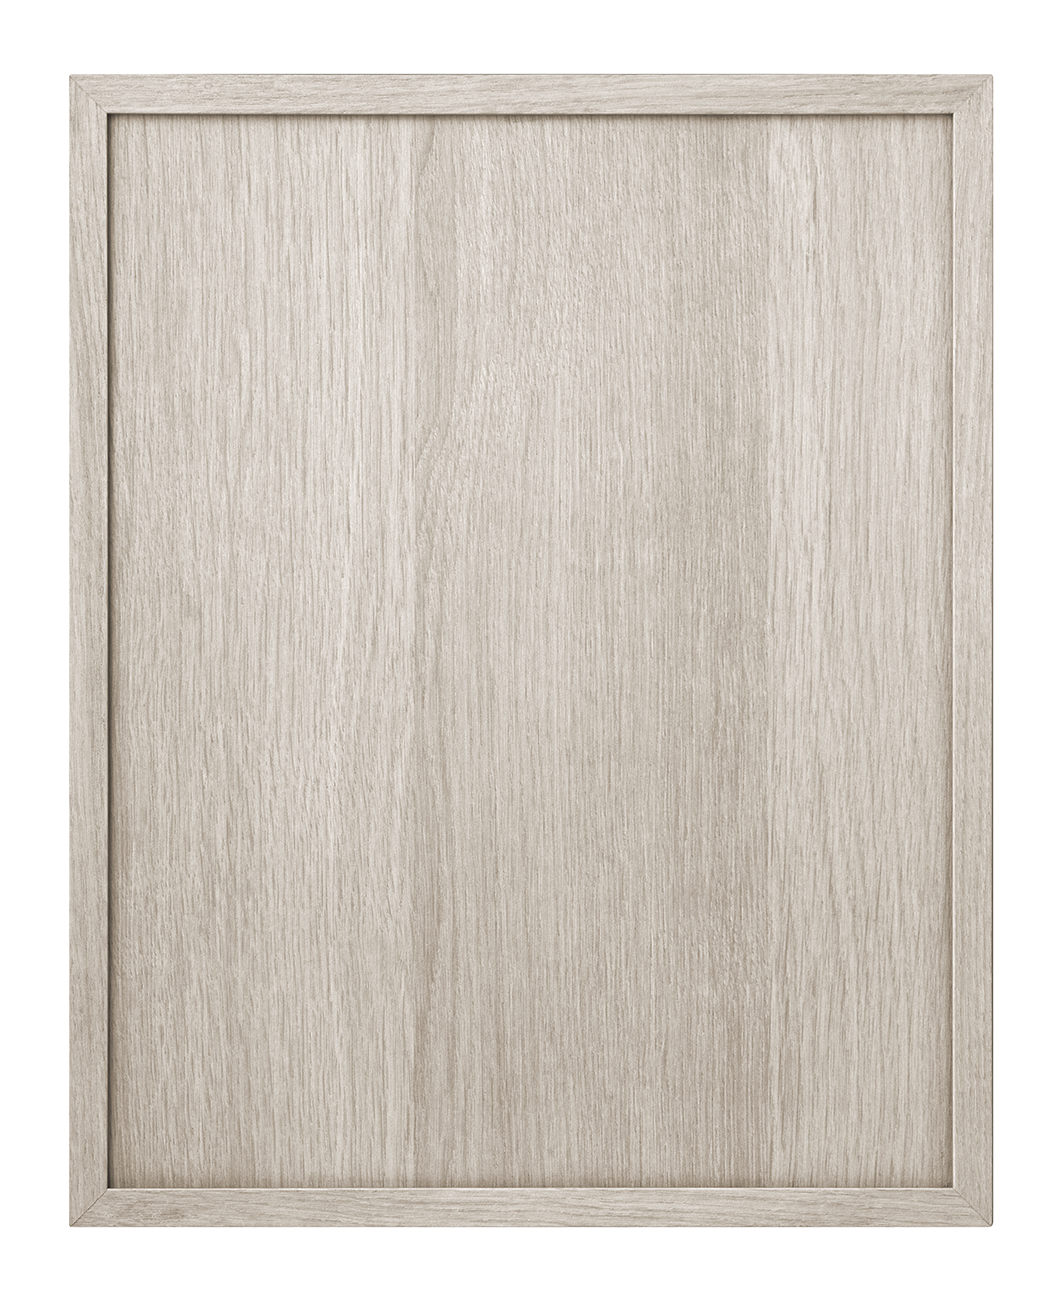 Kline cabinet door in Tafisa 580 free spirit